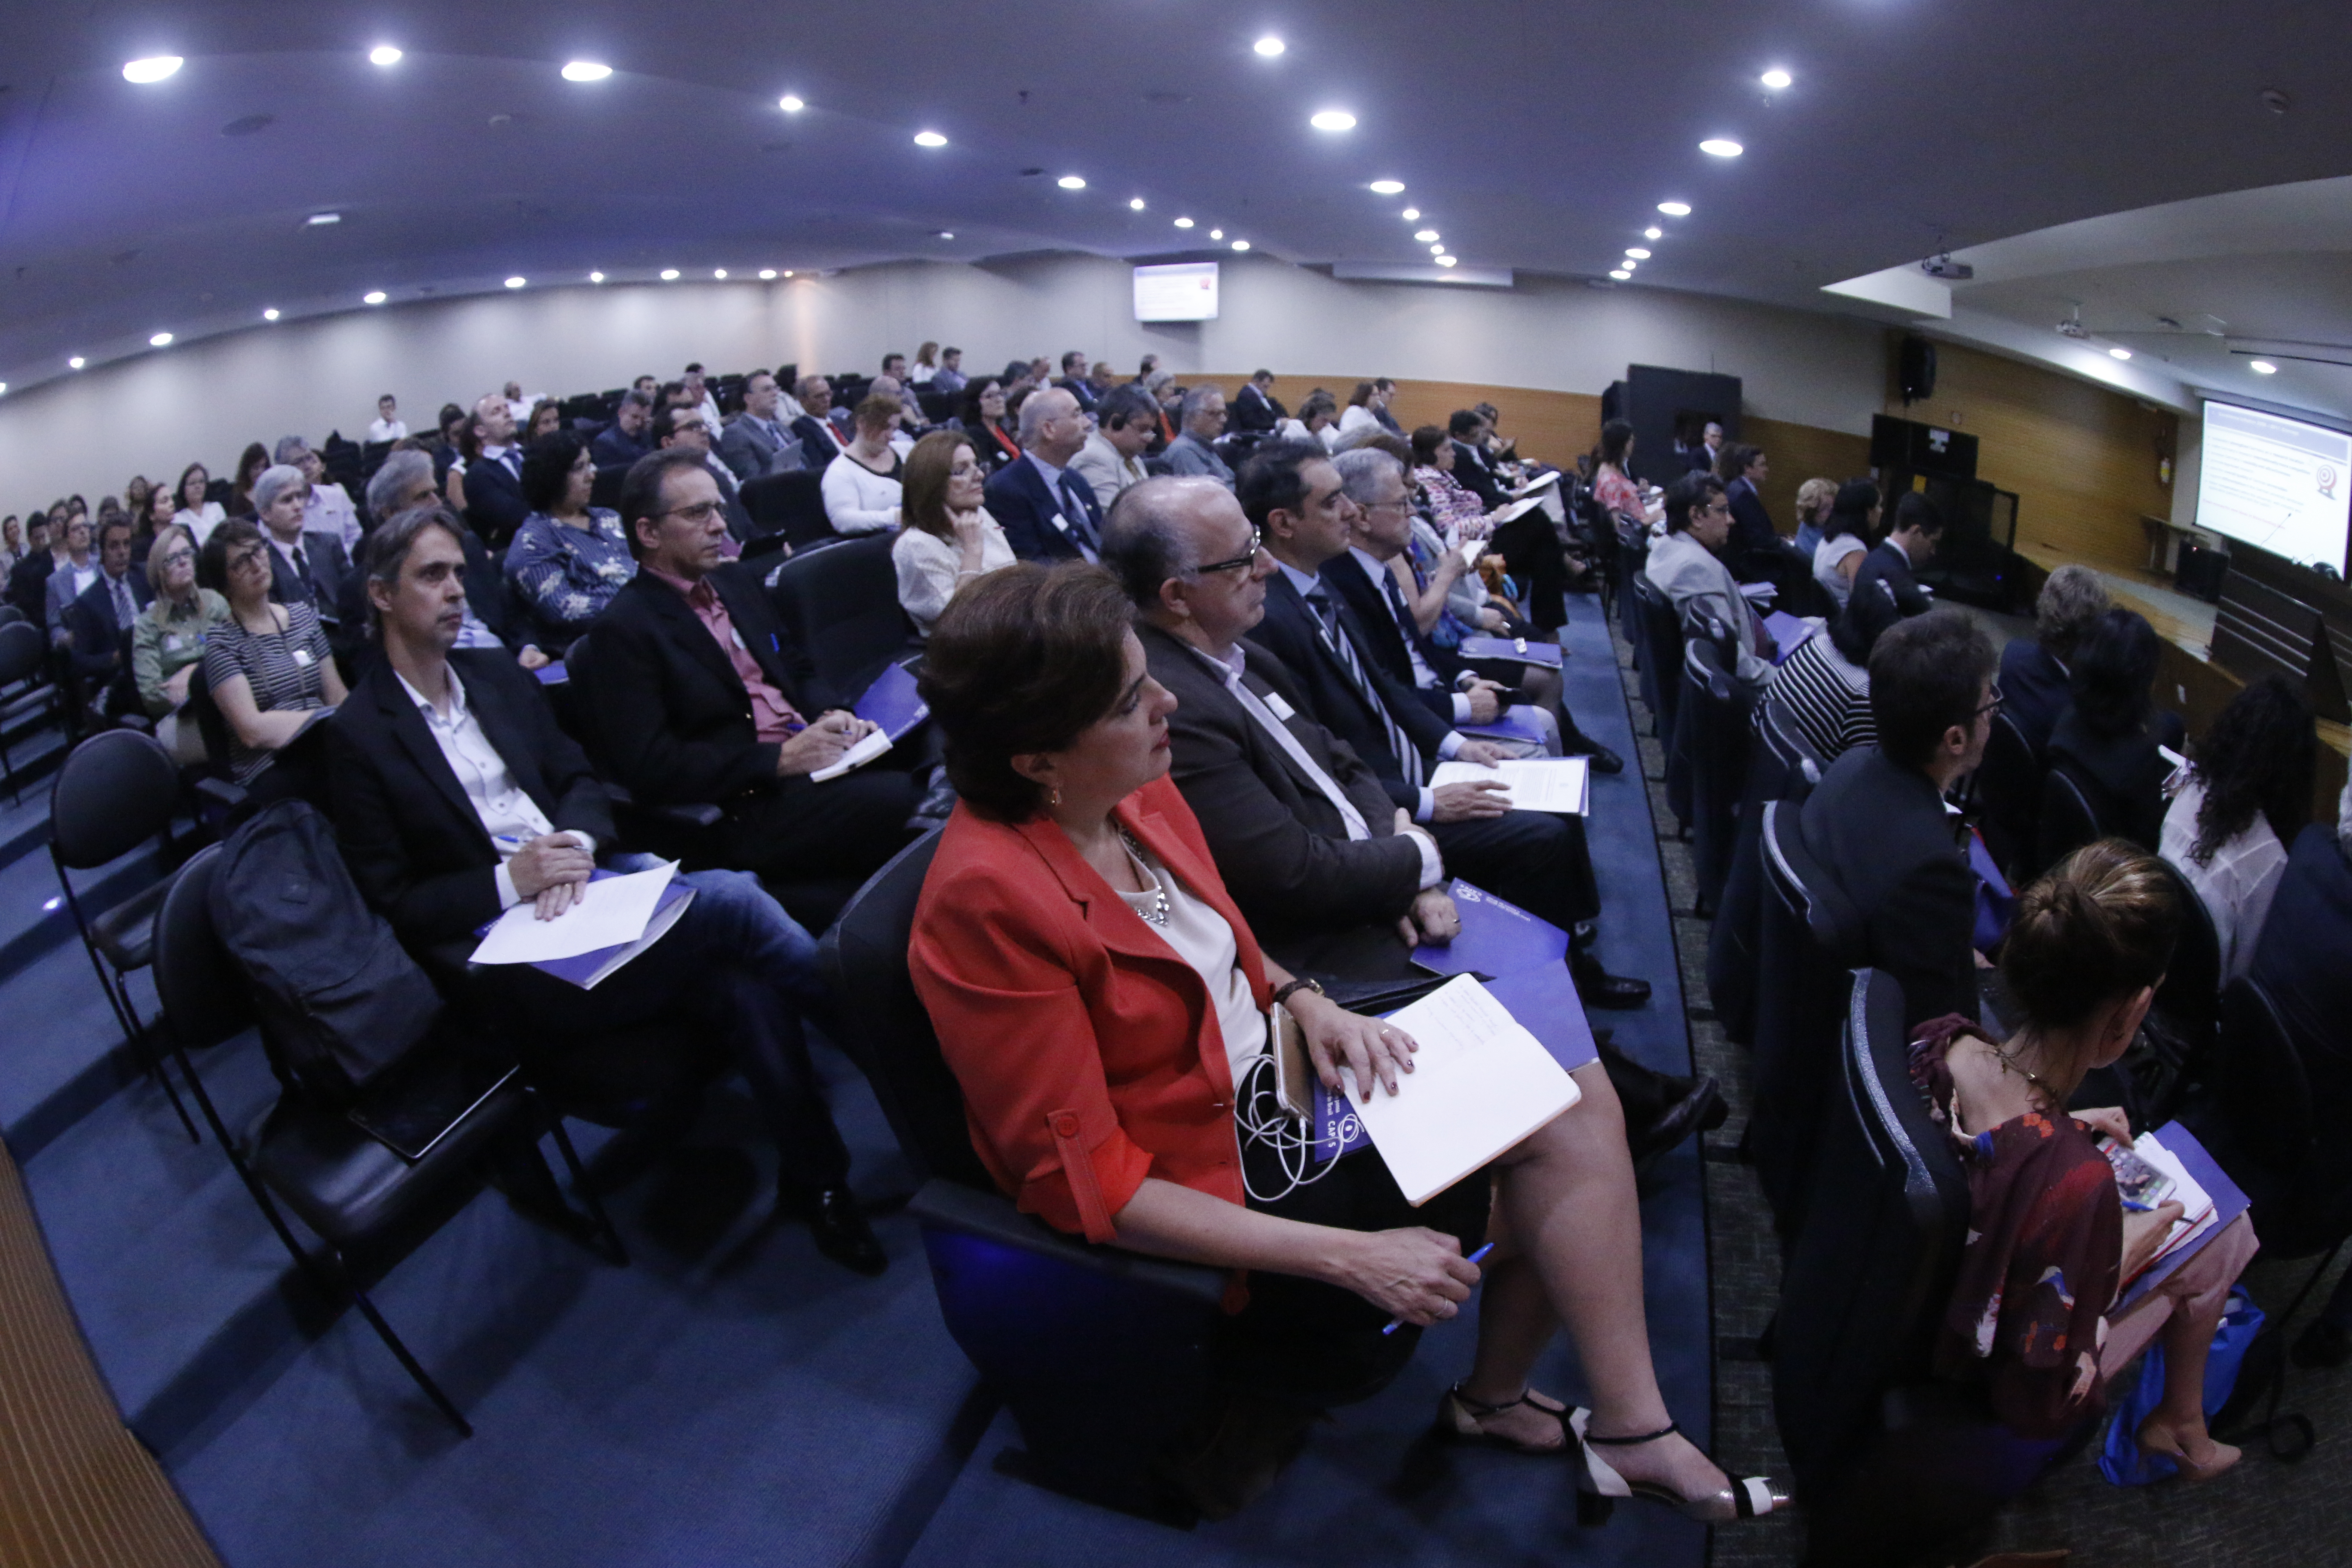 Cerca de 90 representantes de universidades brasileras formaron parte del público del evento